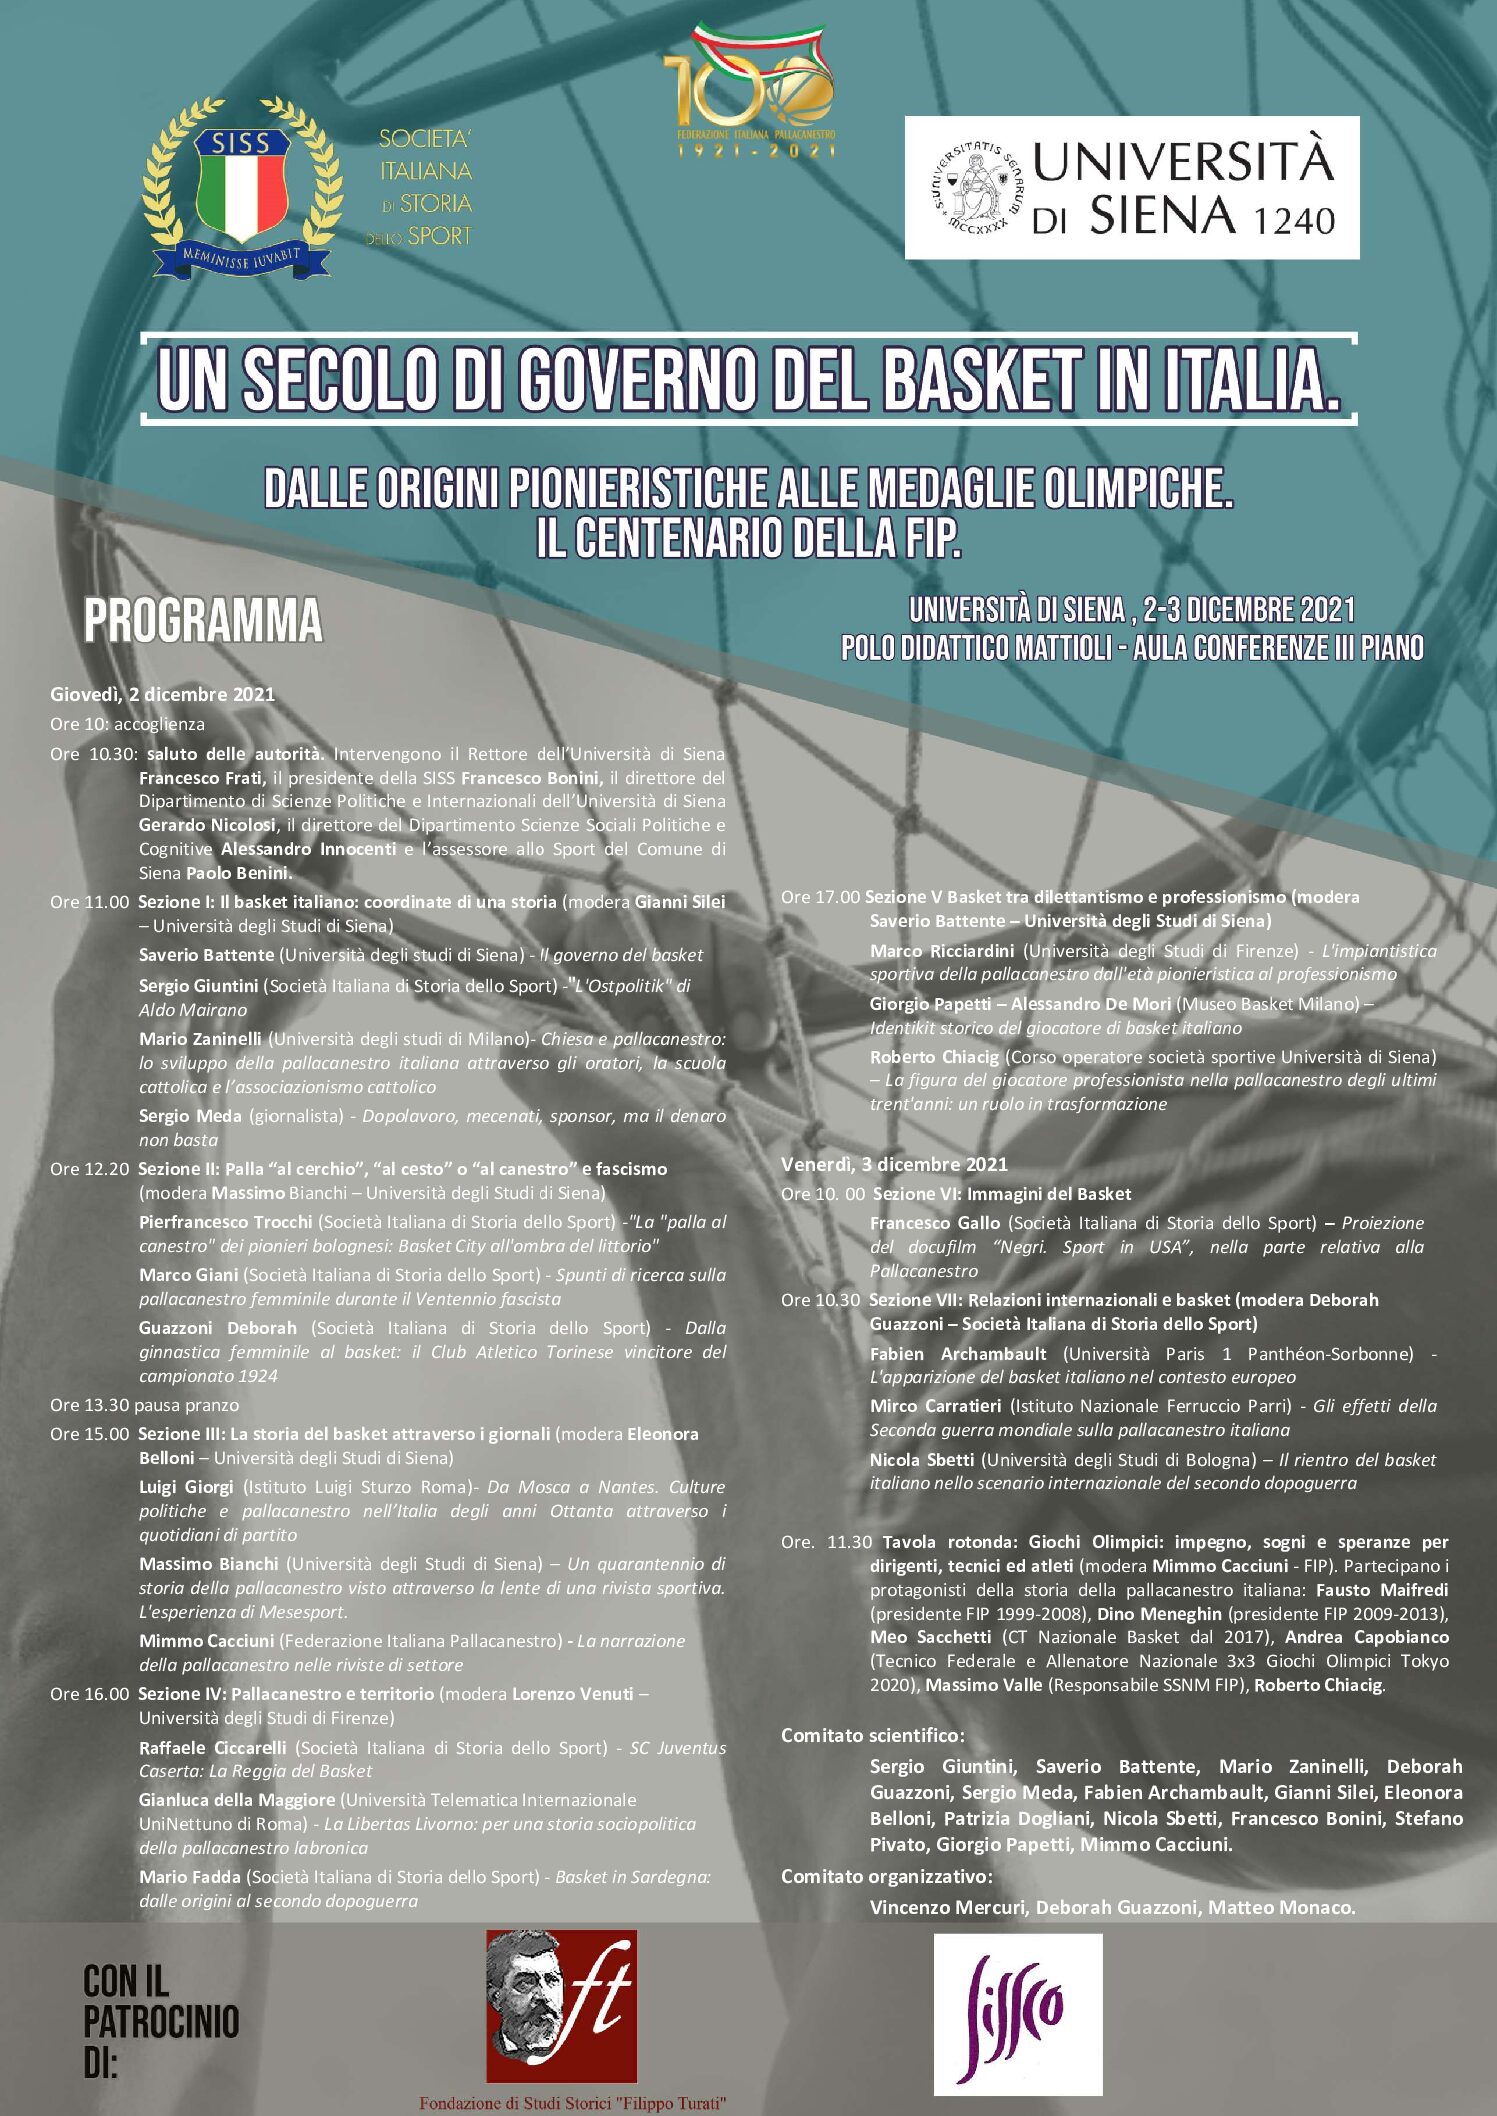 “Un secolo di governo del basket in Italia”